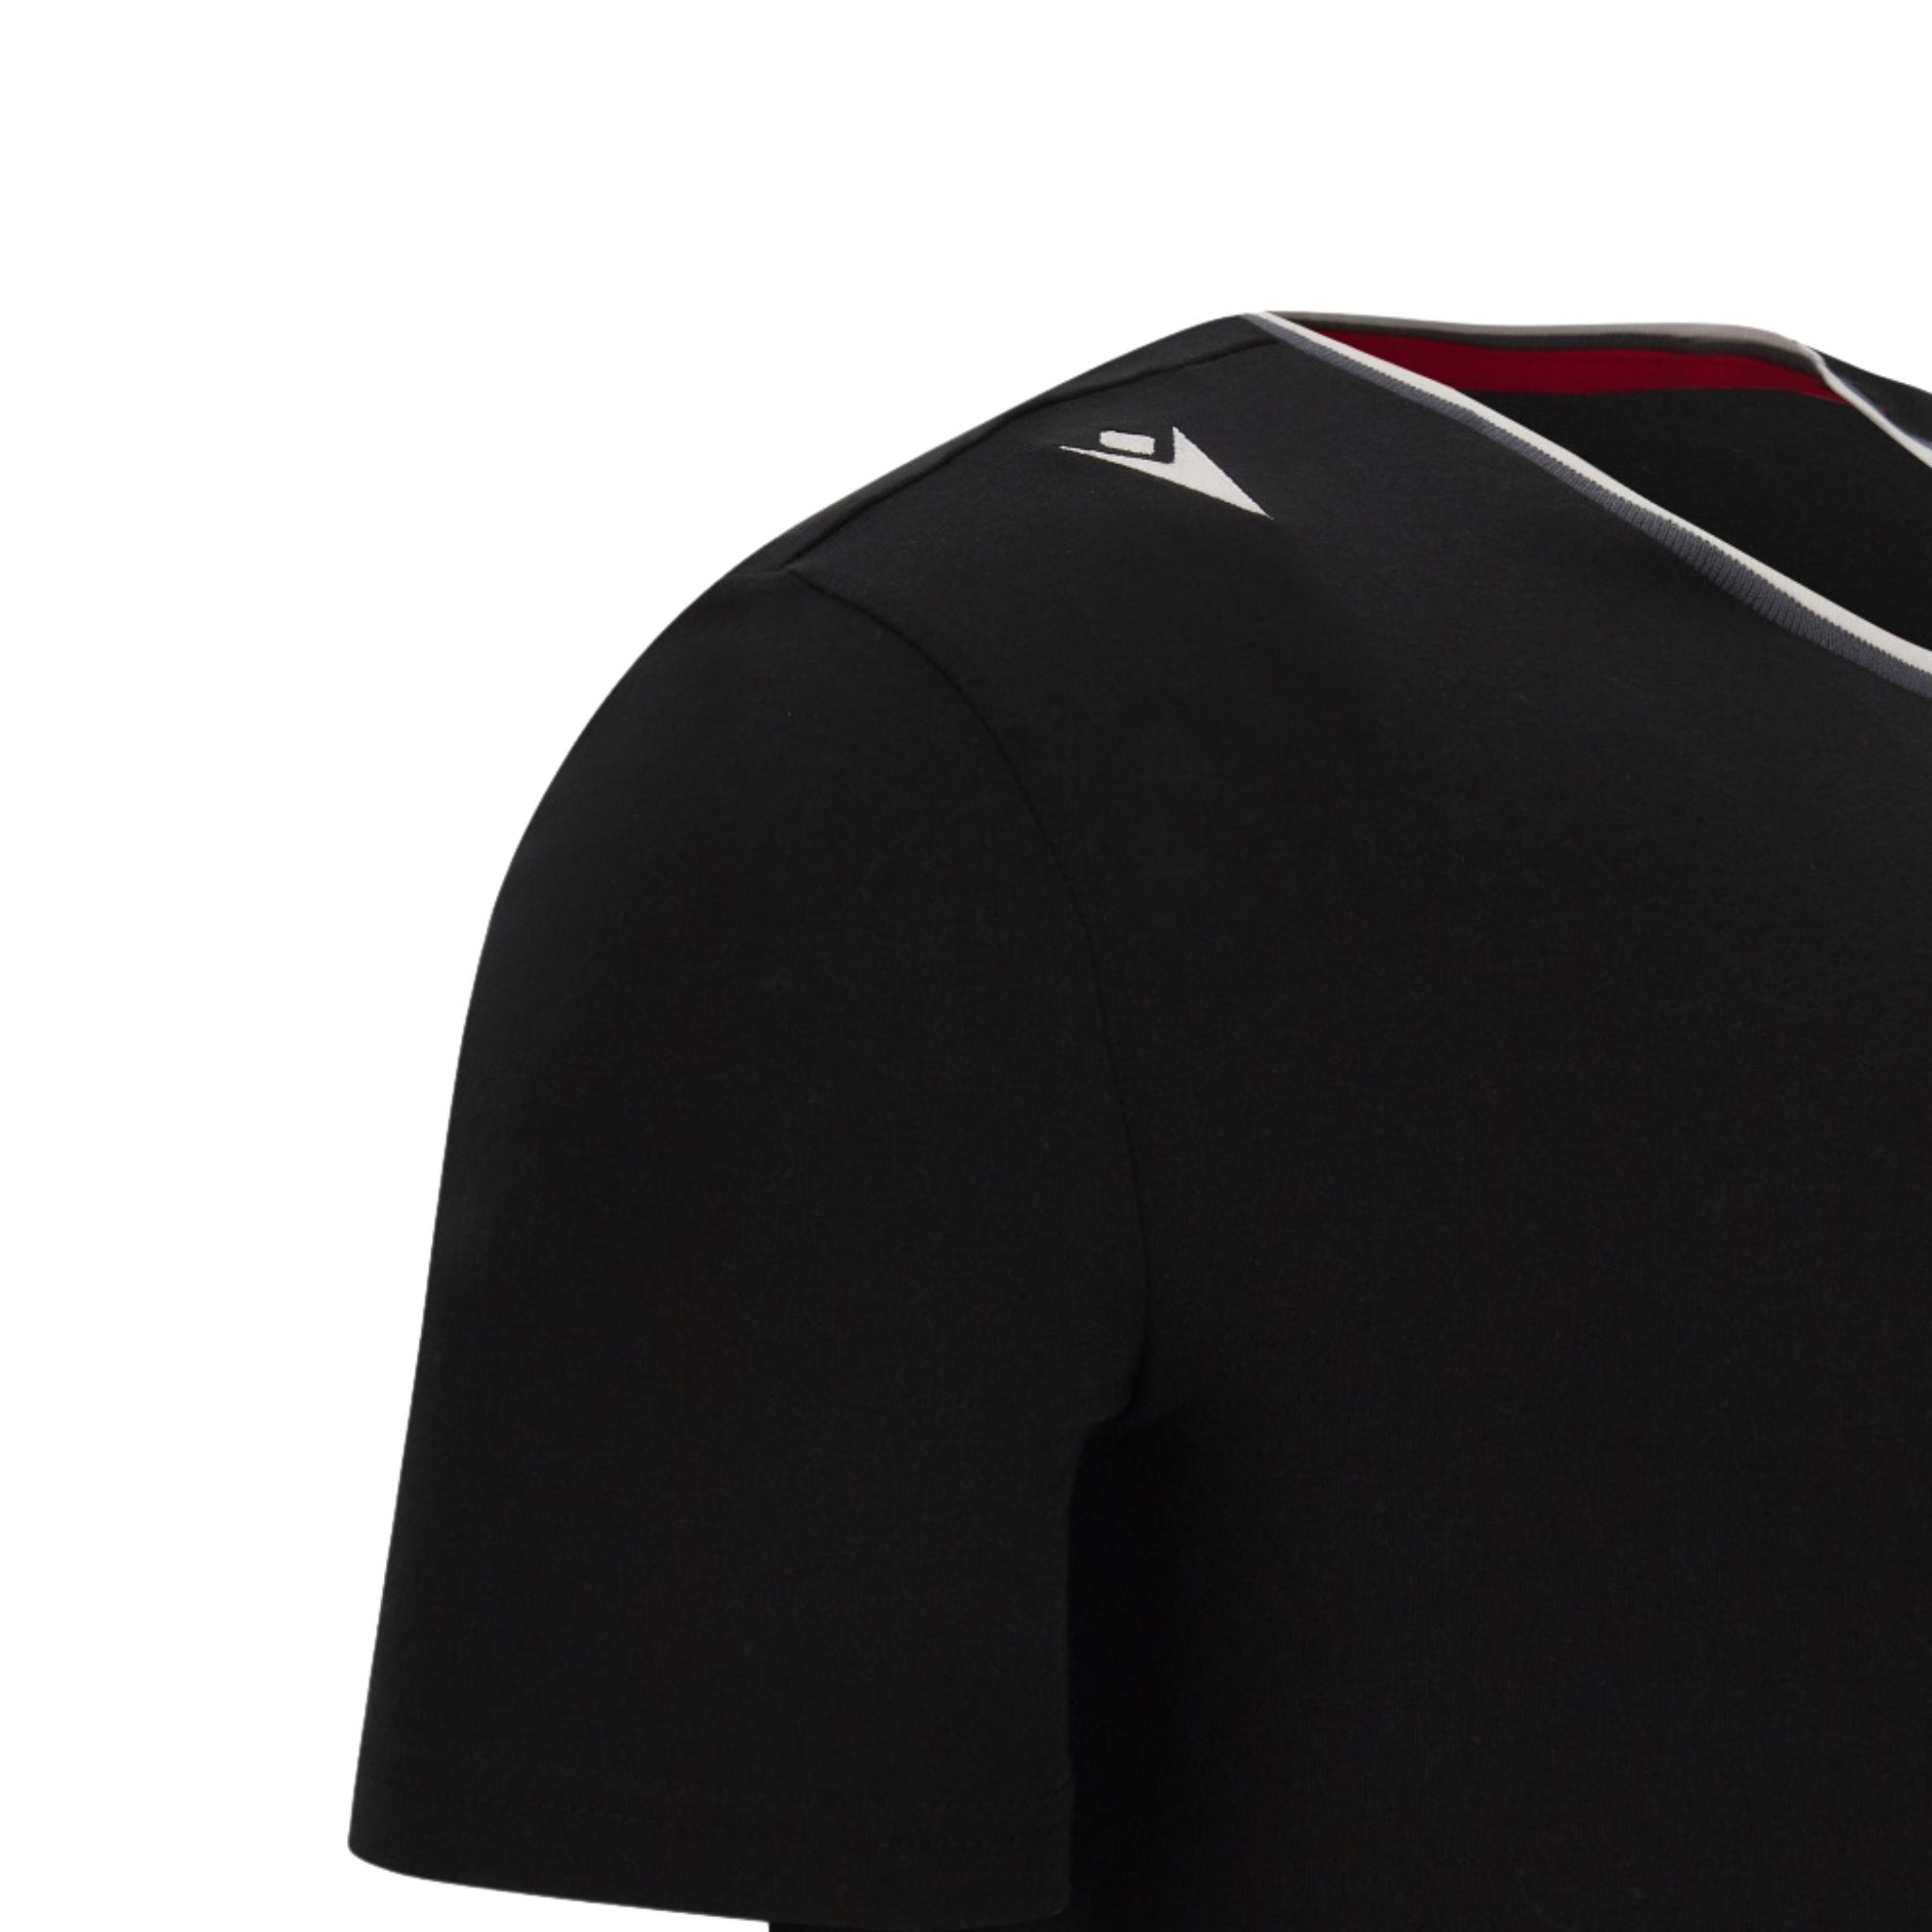 Buy Alfaq Bulls Unique 23 Tshirt for Mens and Womens Black at